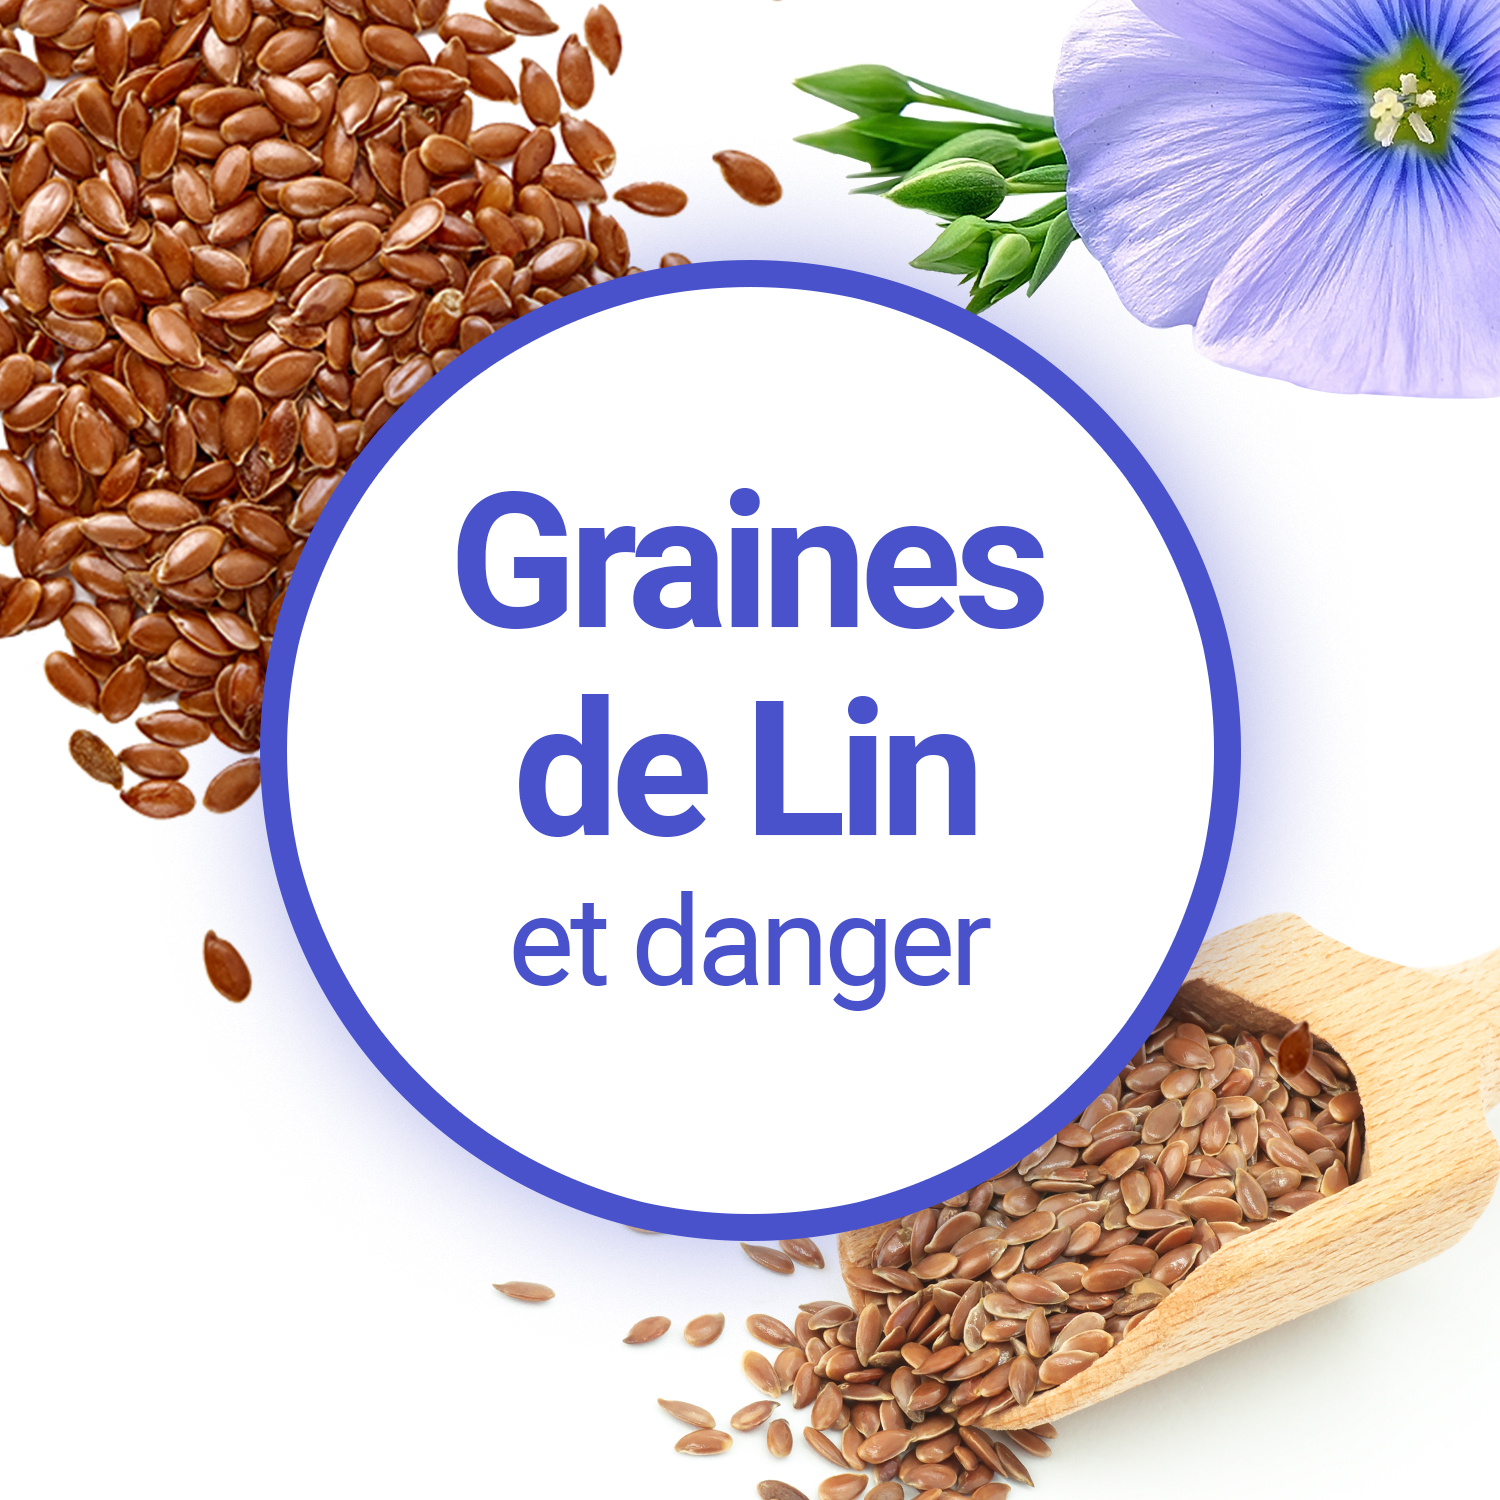 Quels sont les inconvénients des graines de lin?